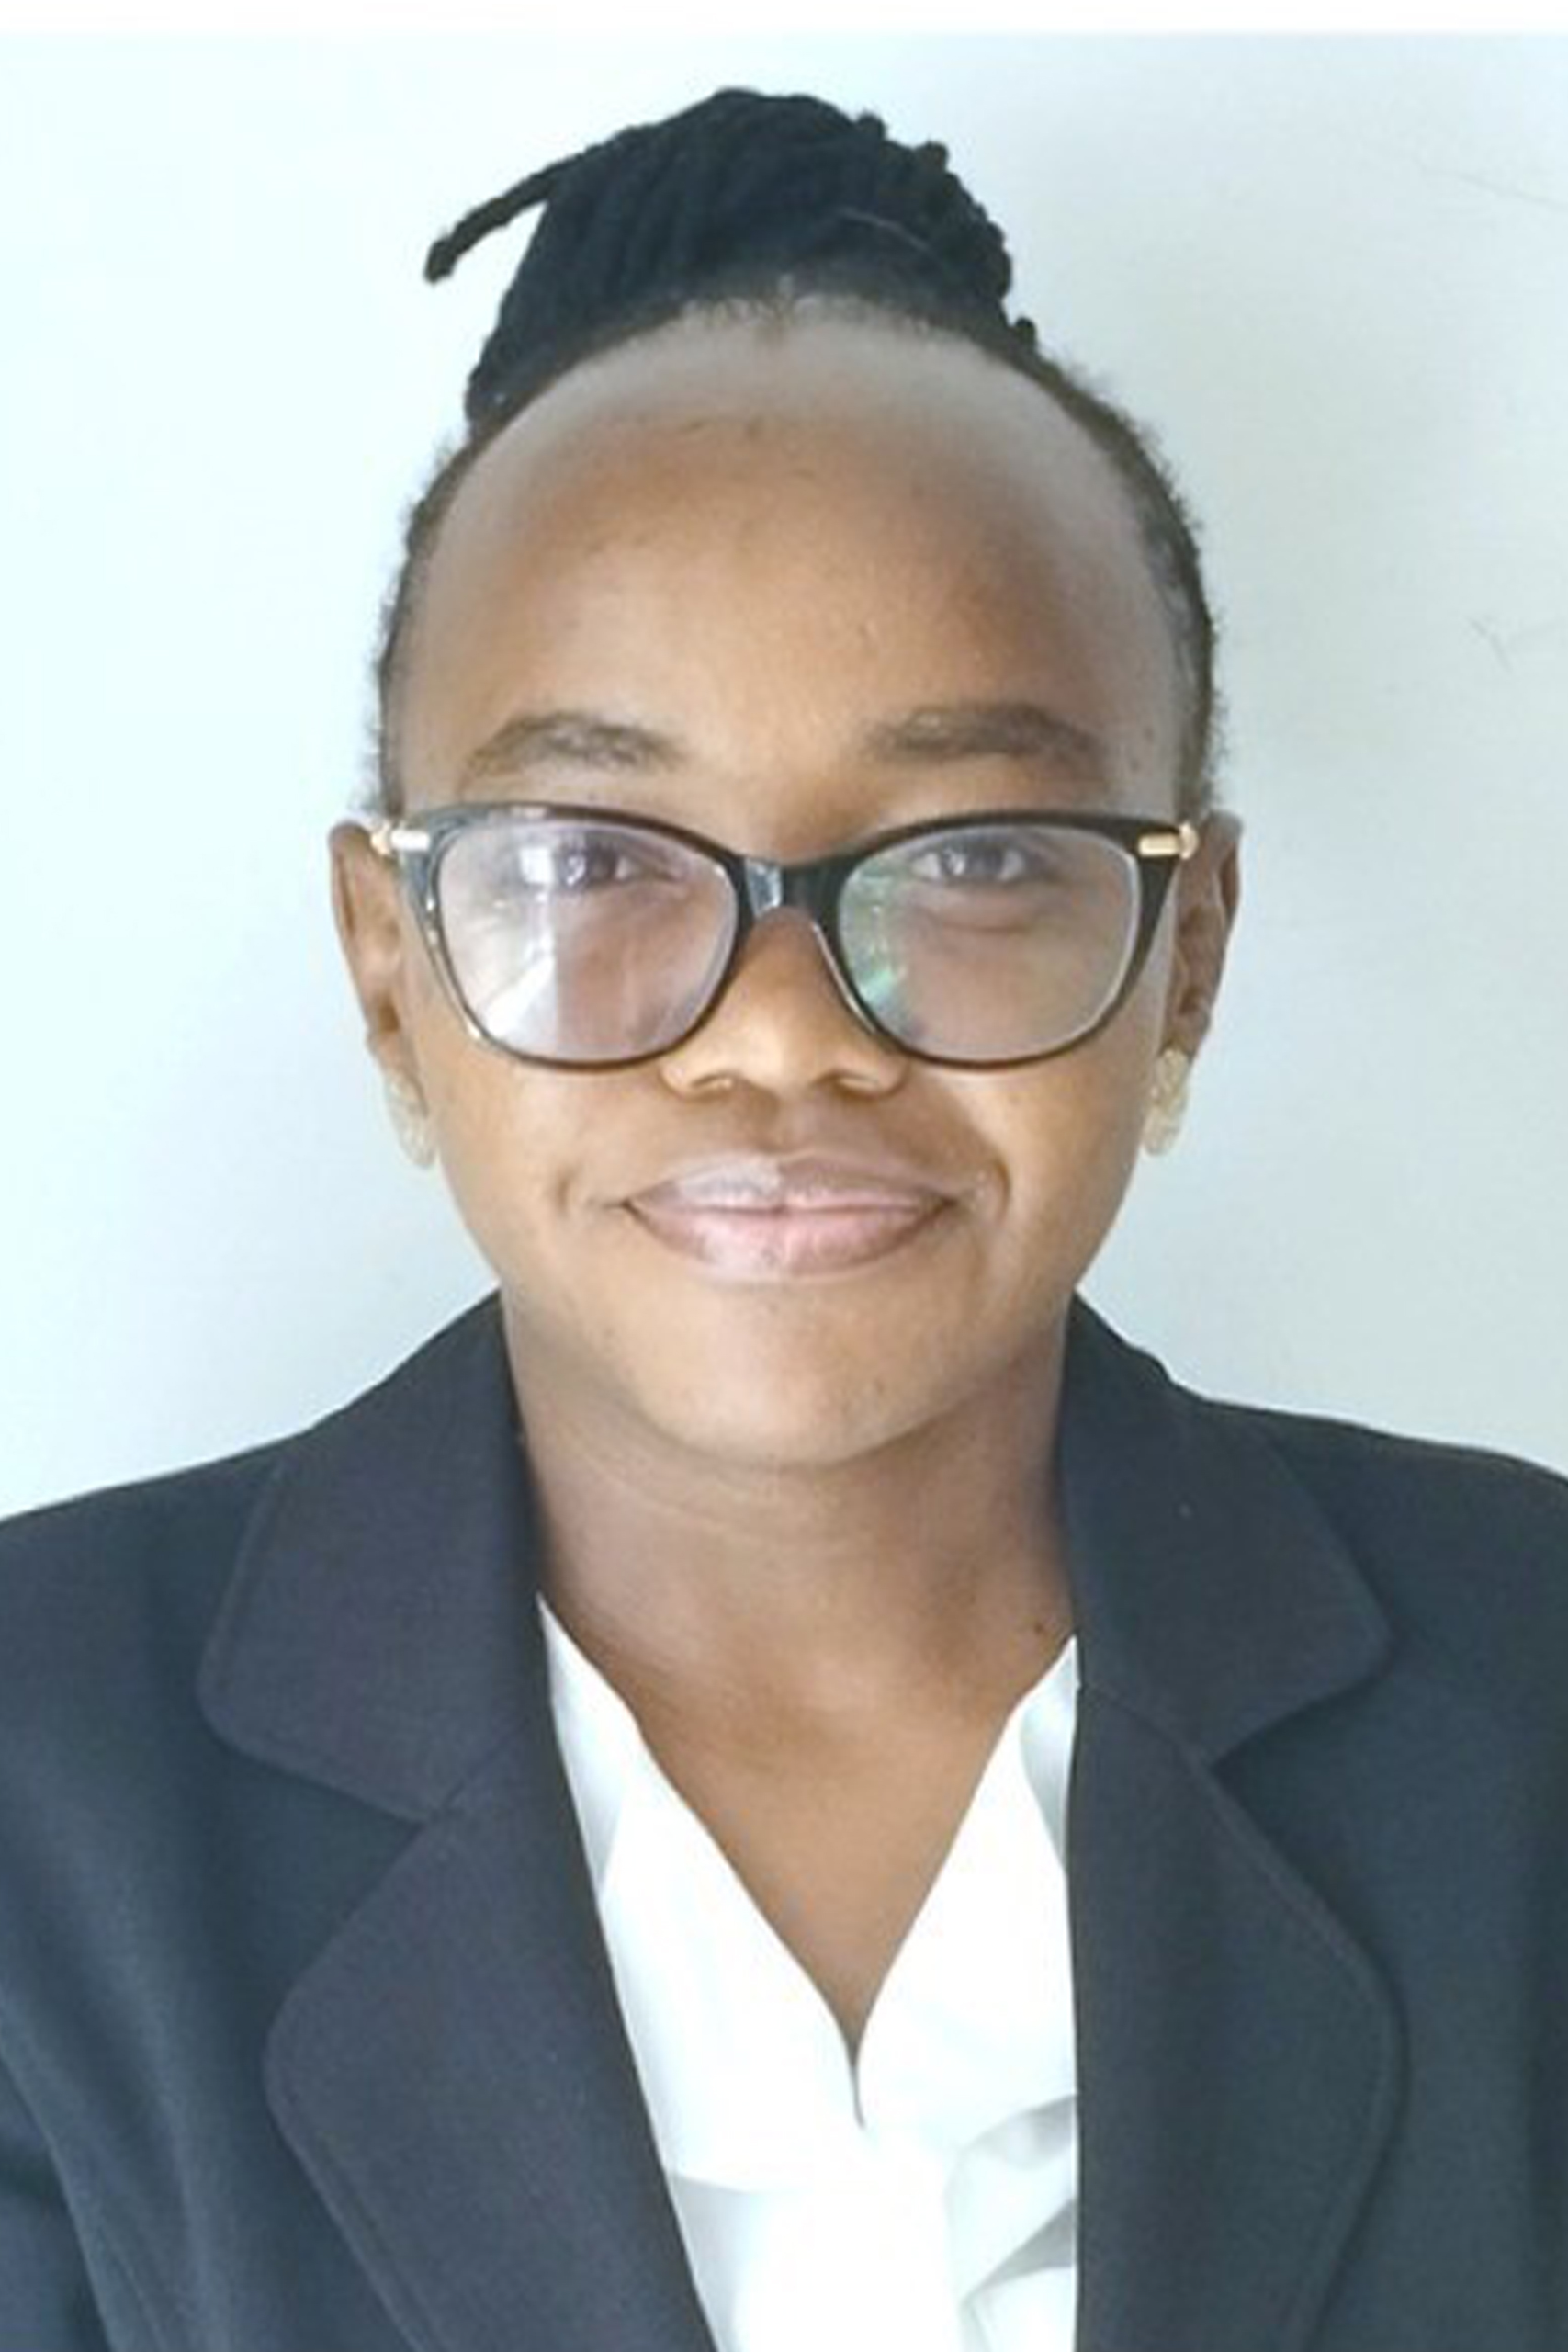 Fidis Nyawira Muriithi